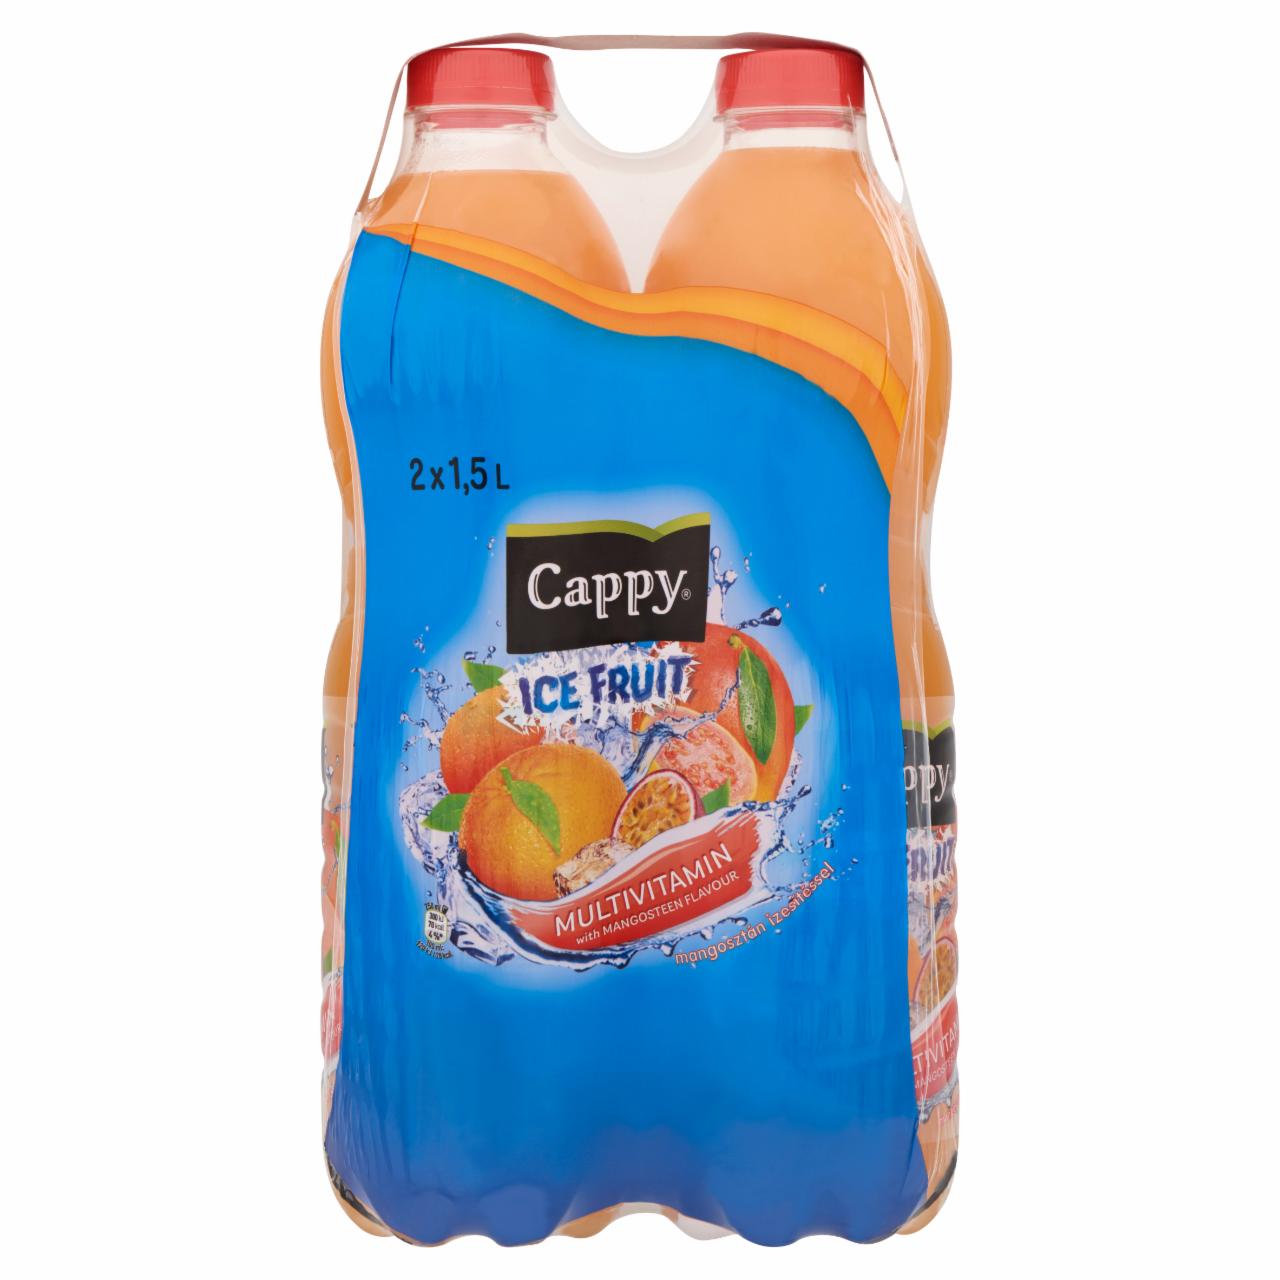 Képek - Cappy Ice Fruit Multivitamin szénsavmentes vegyesgyümölcs ital mangosztán ízesítéssel 2 x 1,5 l